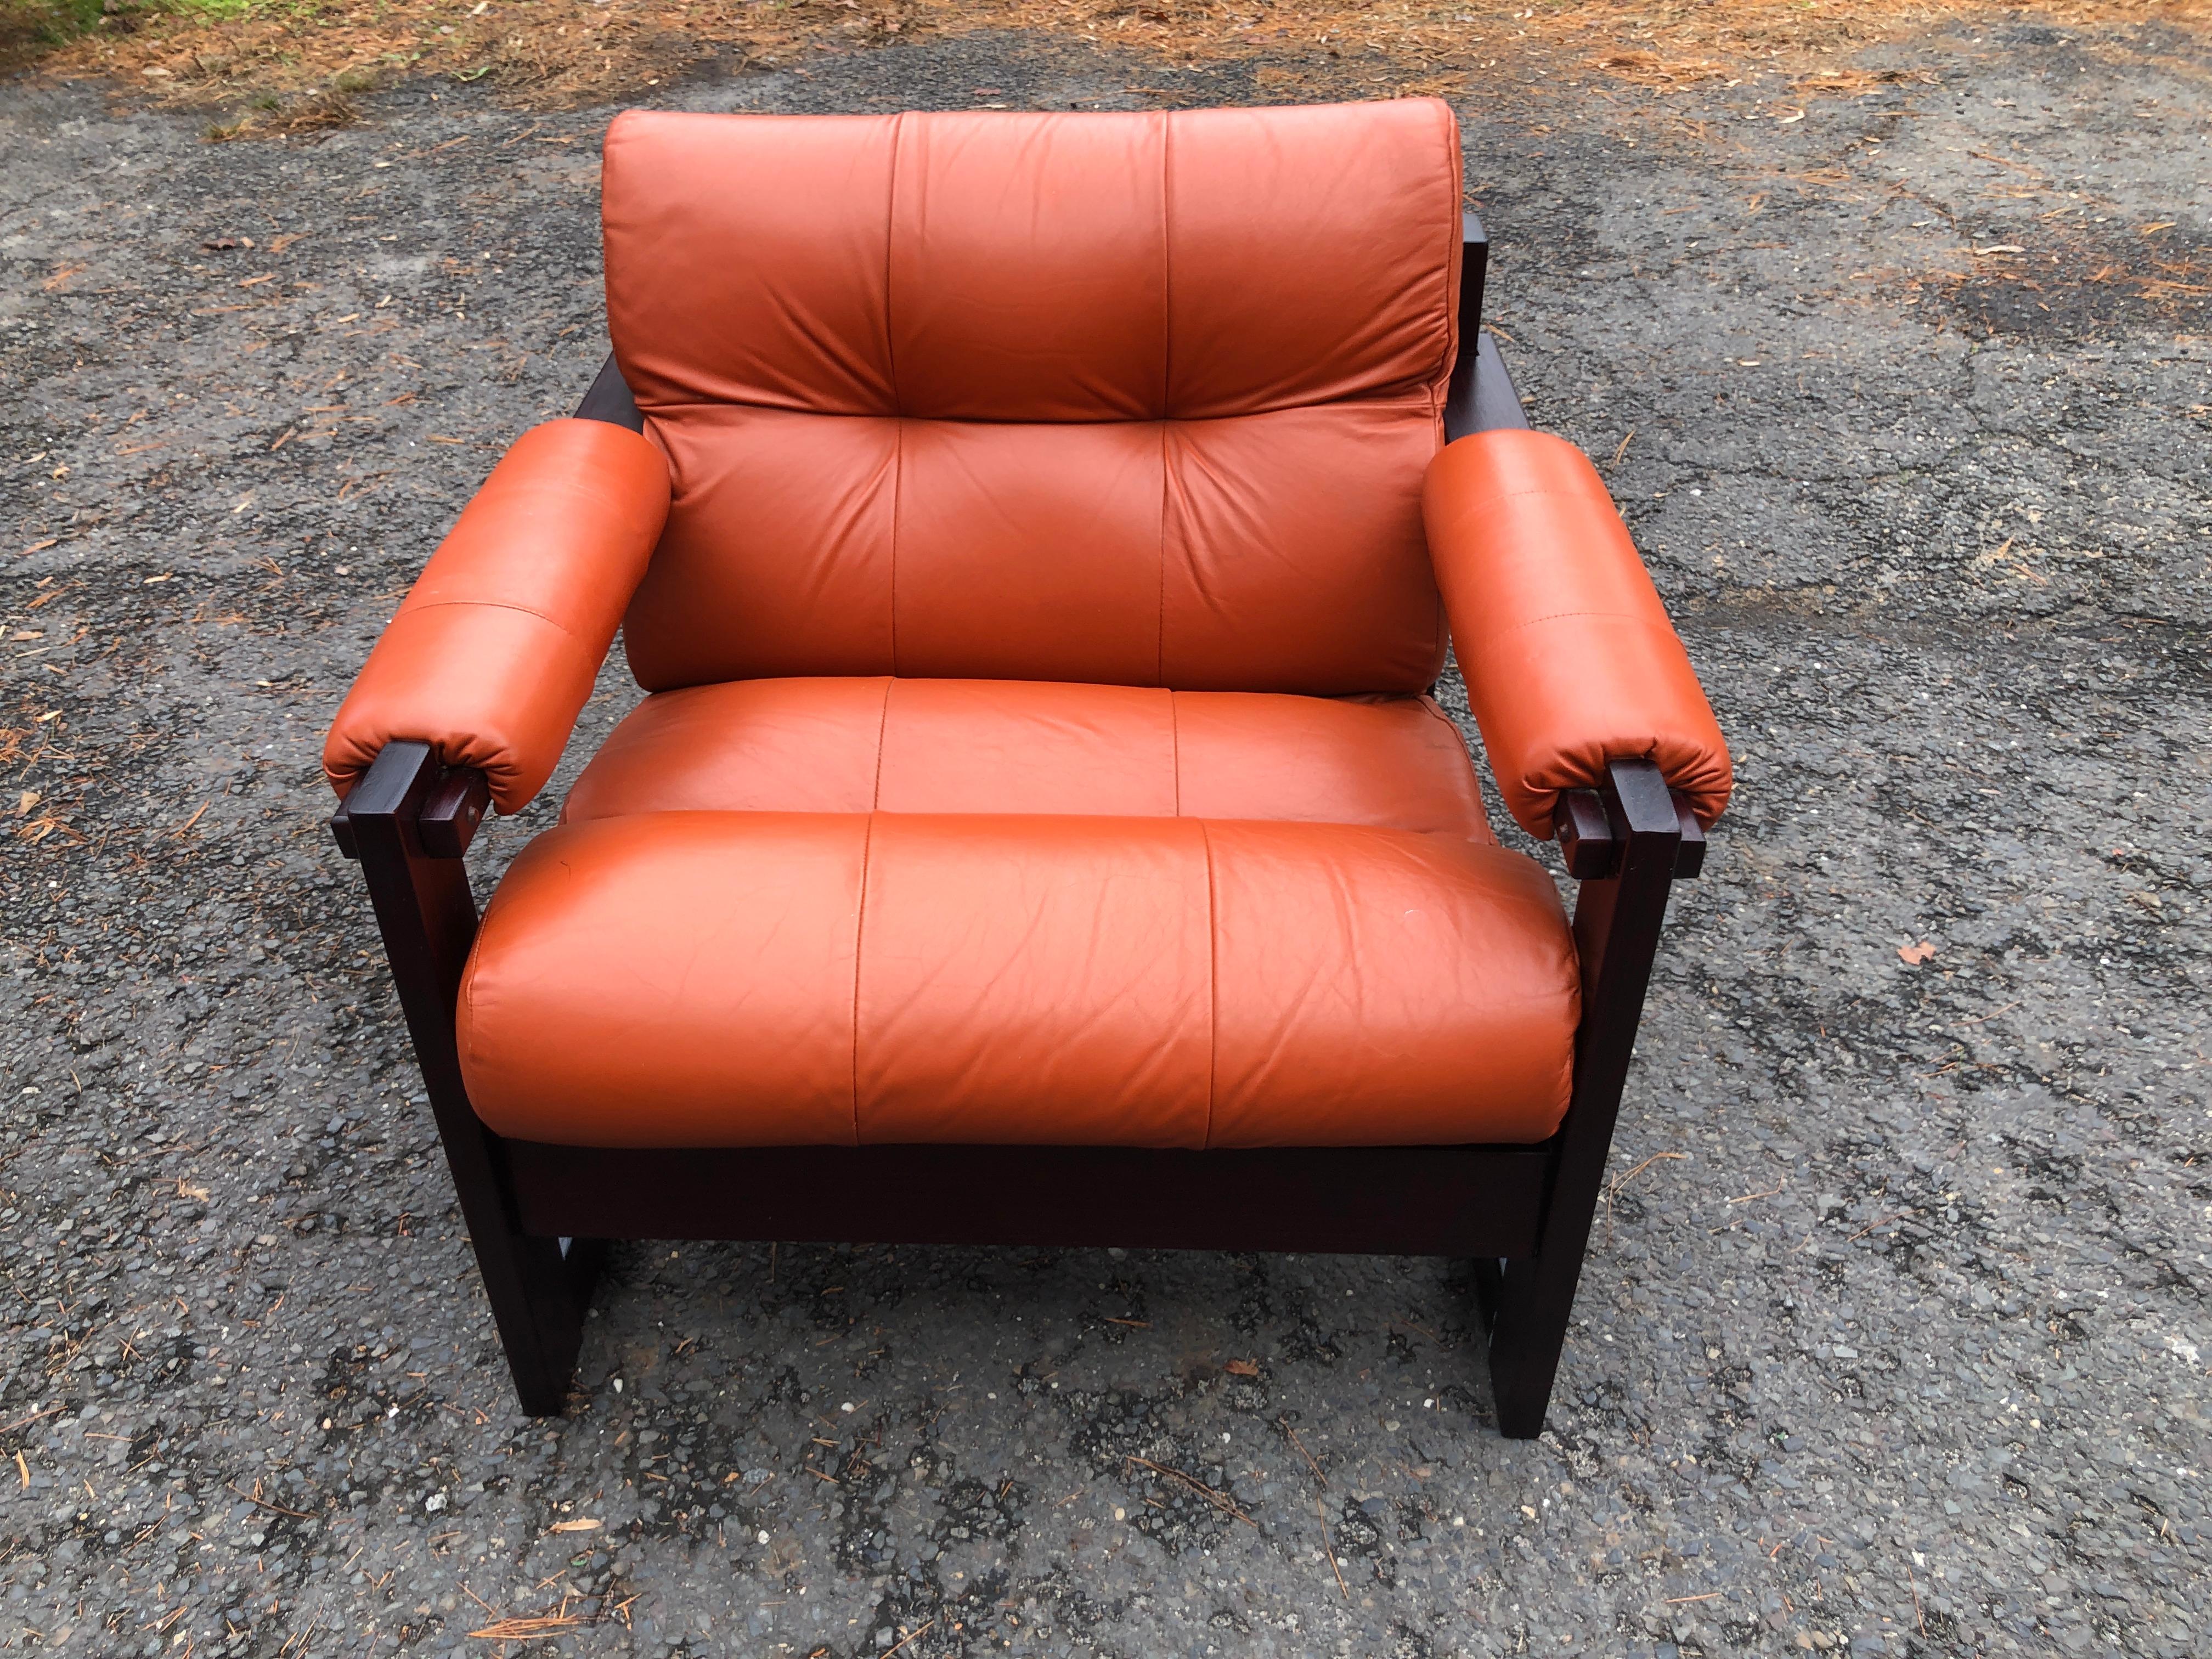 Magnifique chaise longue S-1 en bois de rose et cuir de Percival Lafer.  Le design S-1 de Lafer se caractérise par l'exotisme brésilien associé à la sensibilité scandinave.  Parmi les designs de Lafer, le S-1 est un peu plus rare à trouver que